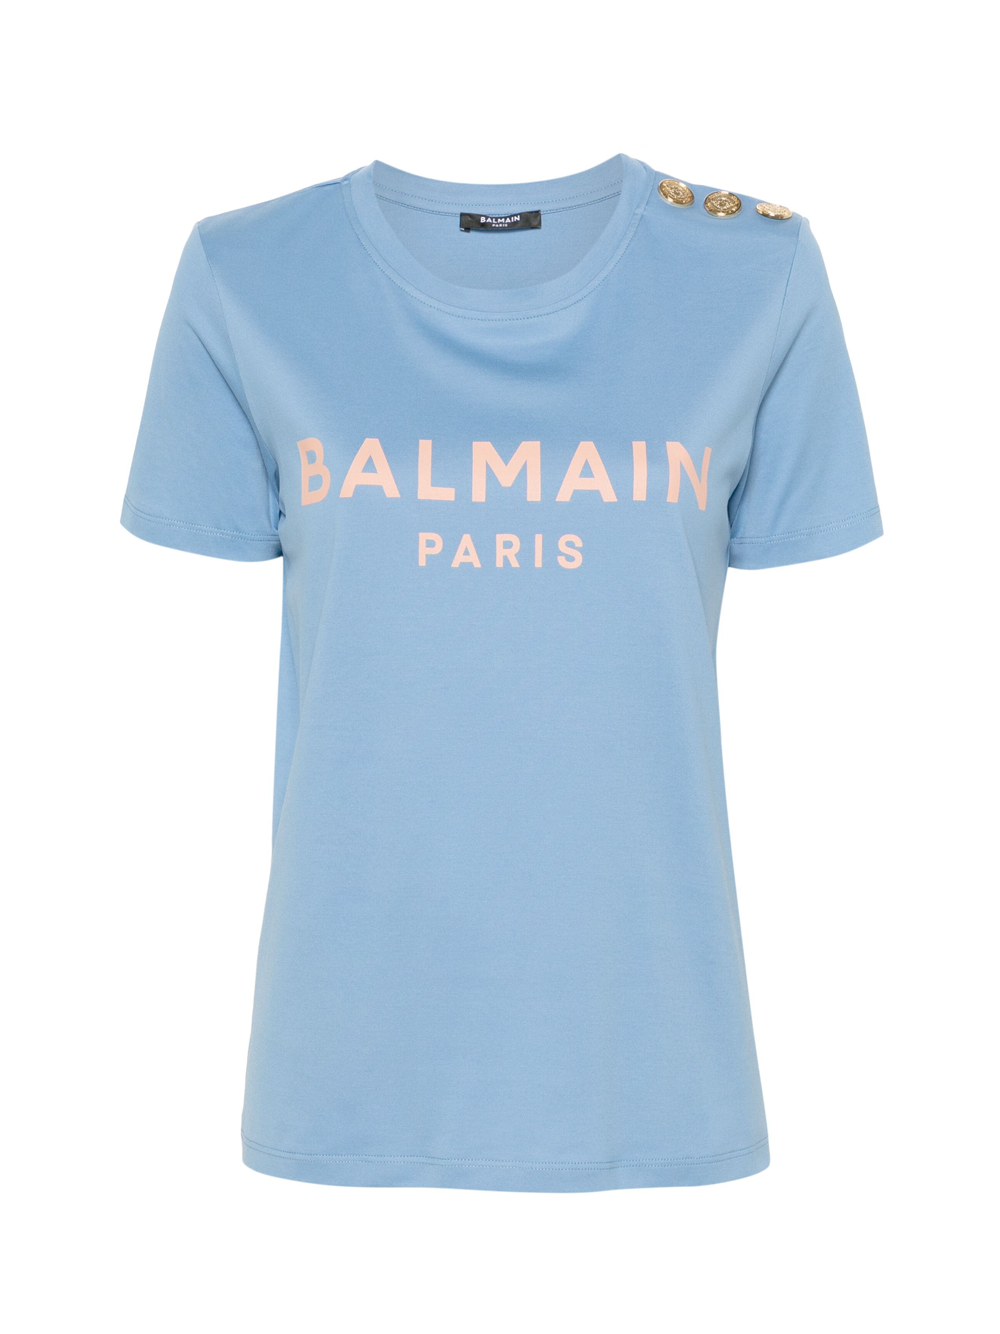 BALMAIN_PrintedT-Shirt_Blue